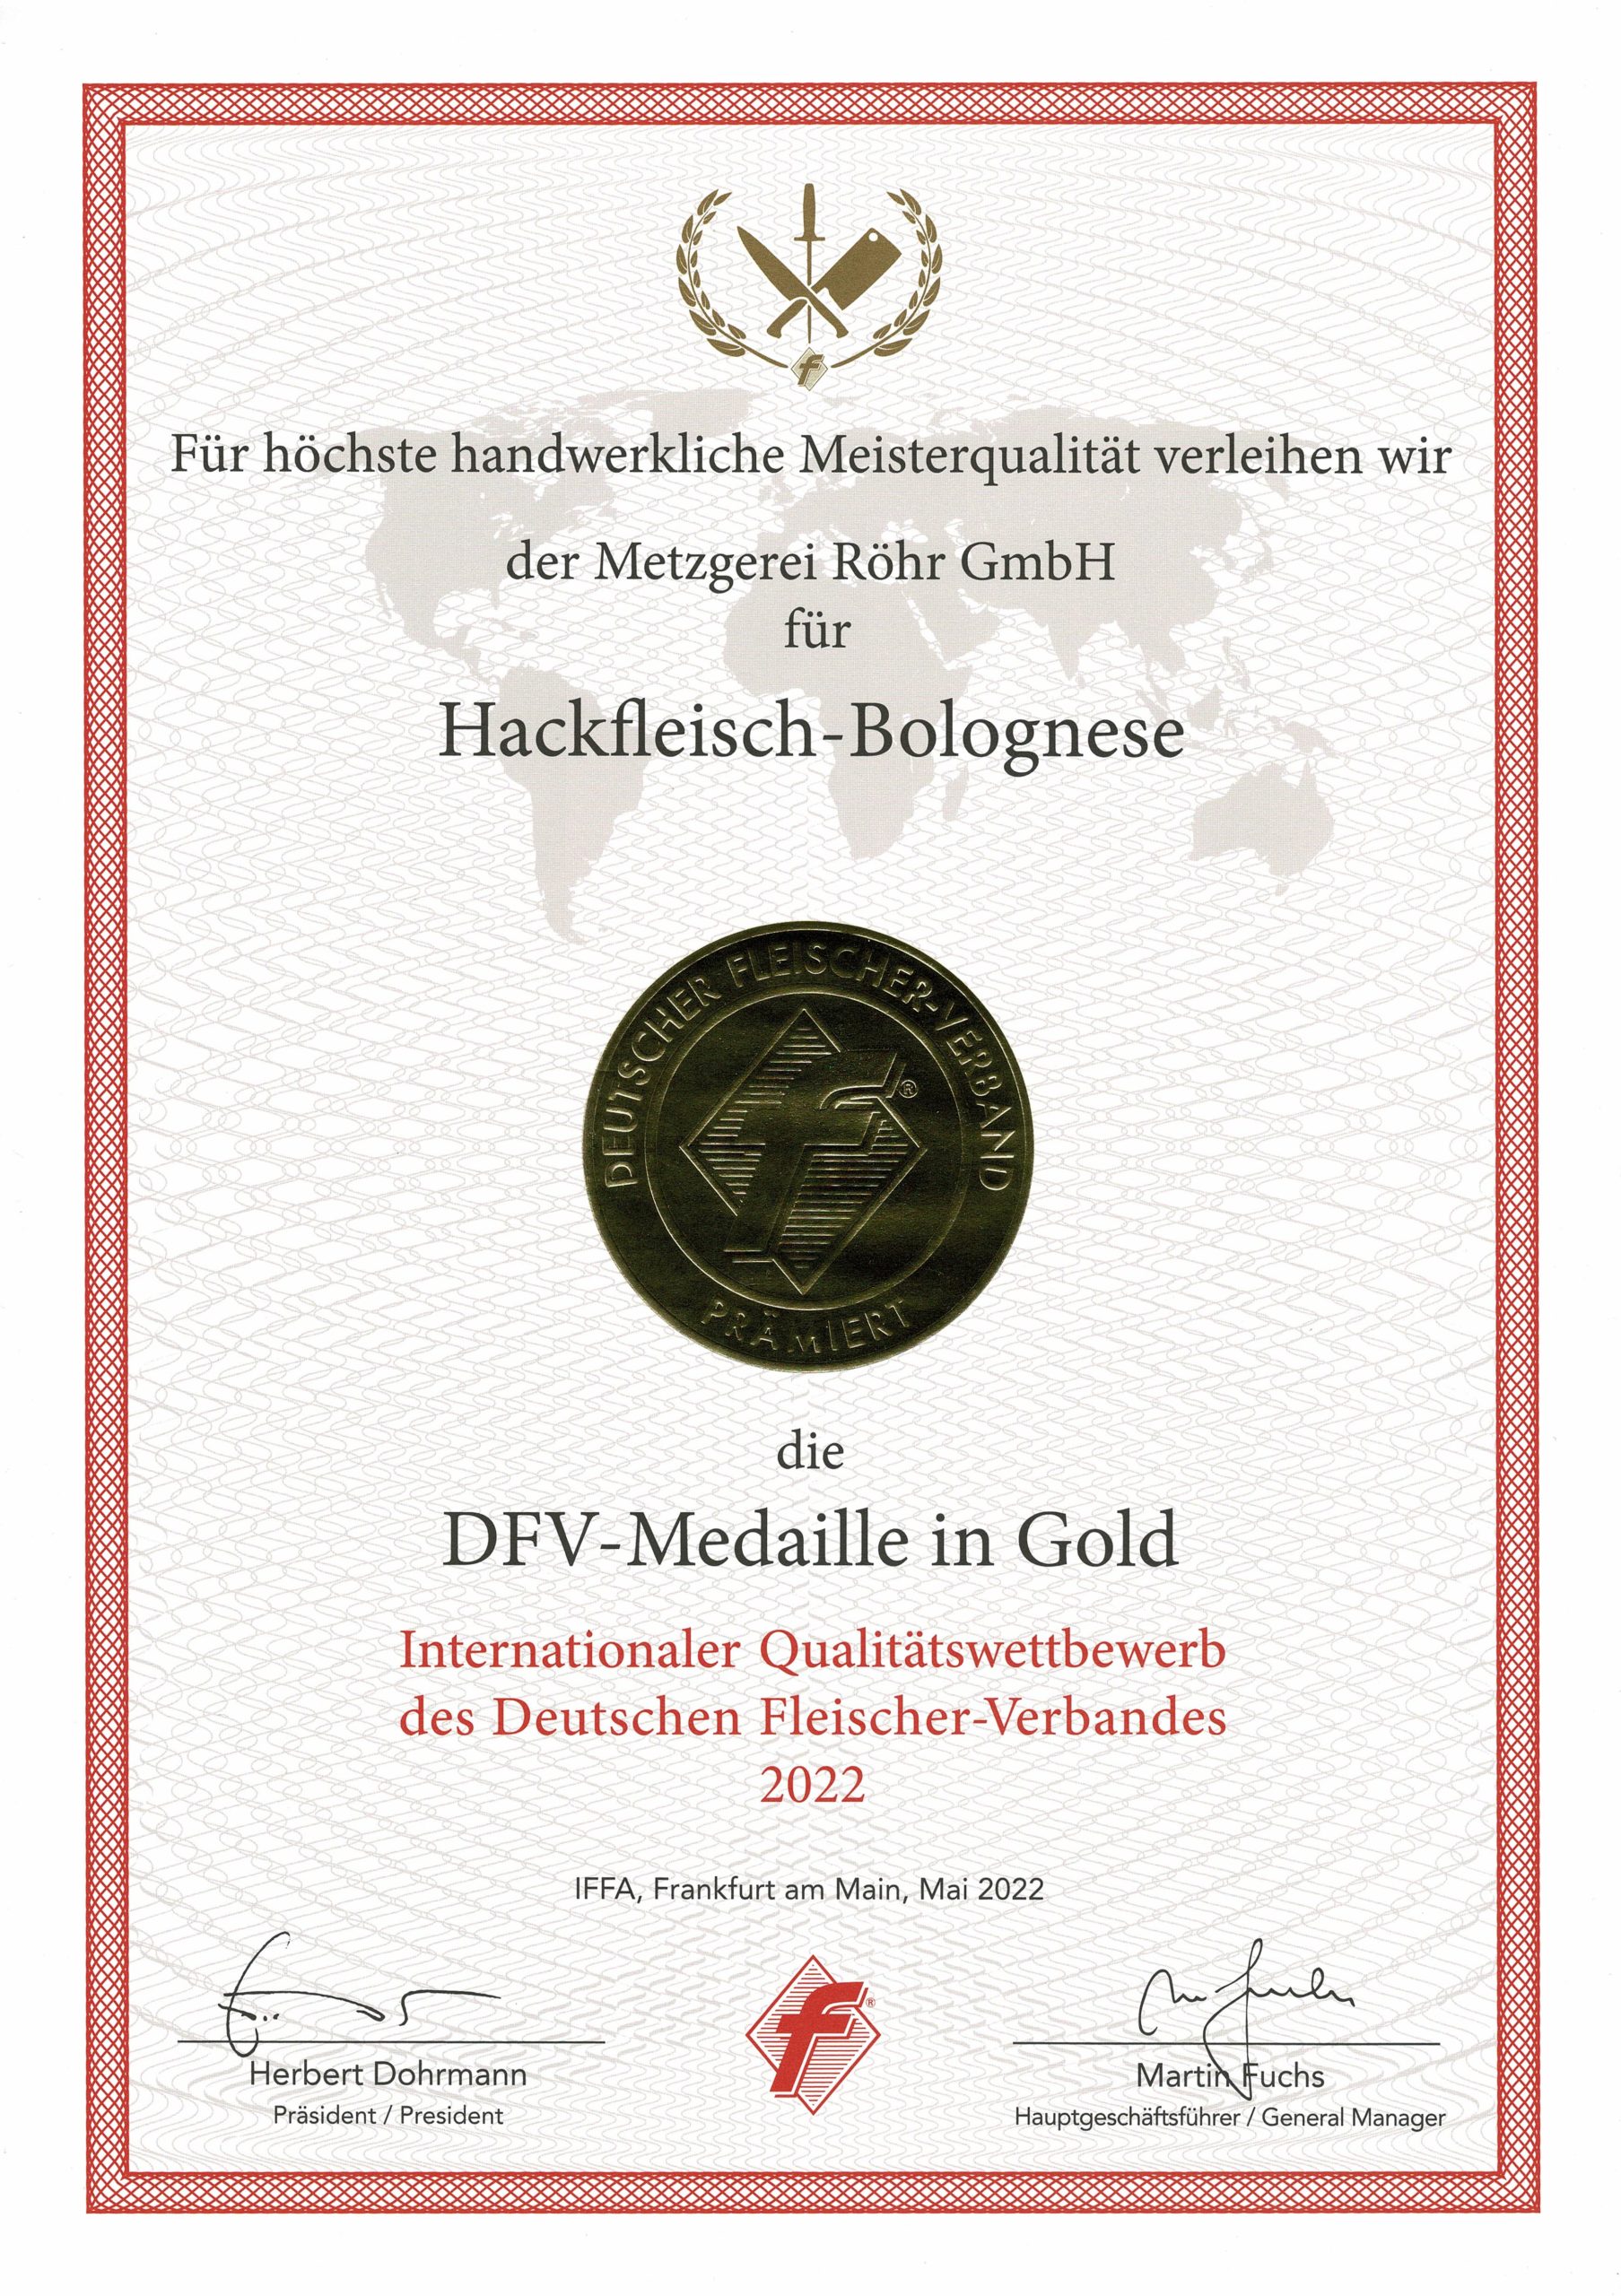 DFV-Medaille in Gold für Hackfleisch Bolognese